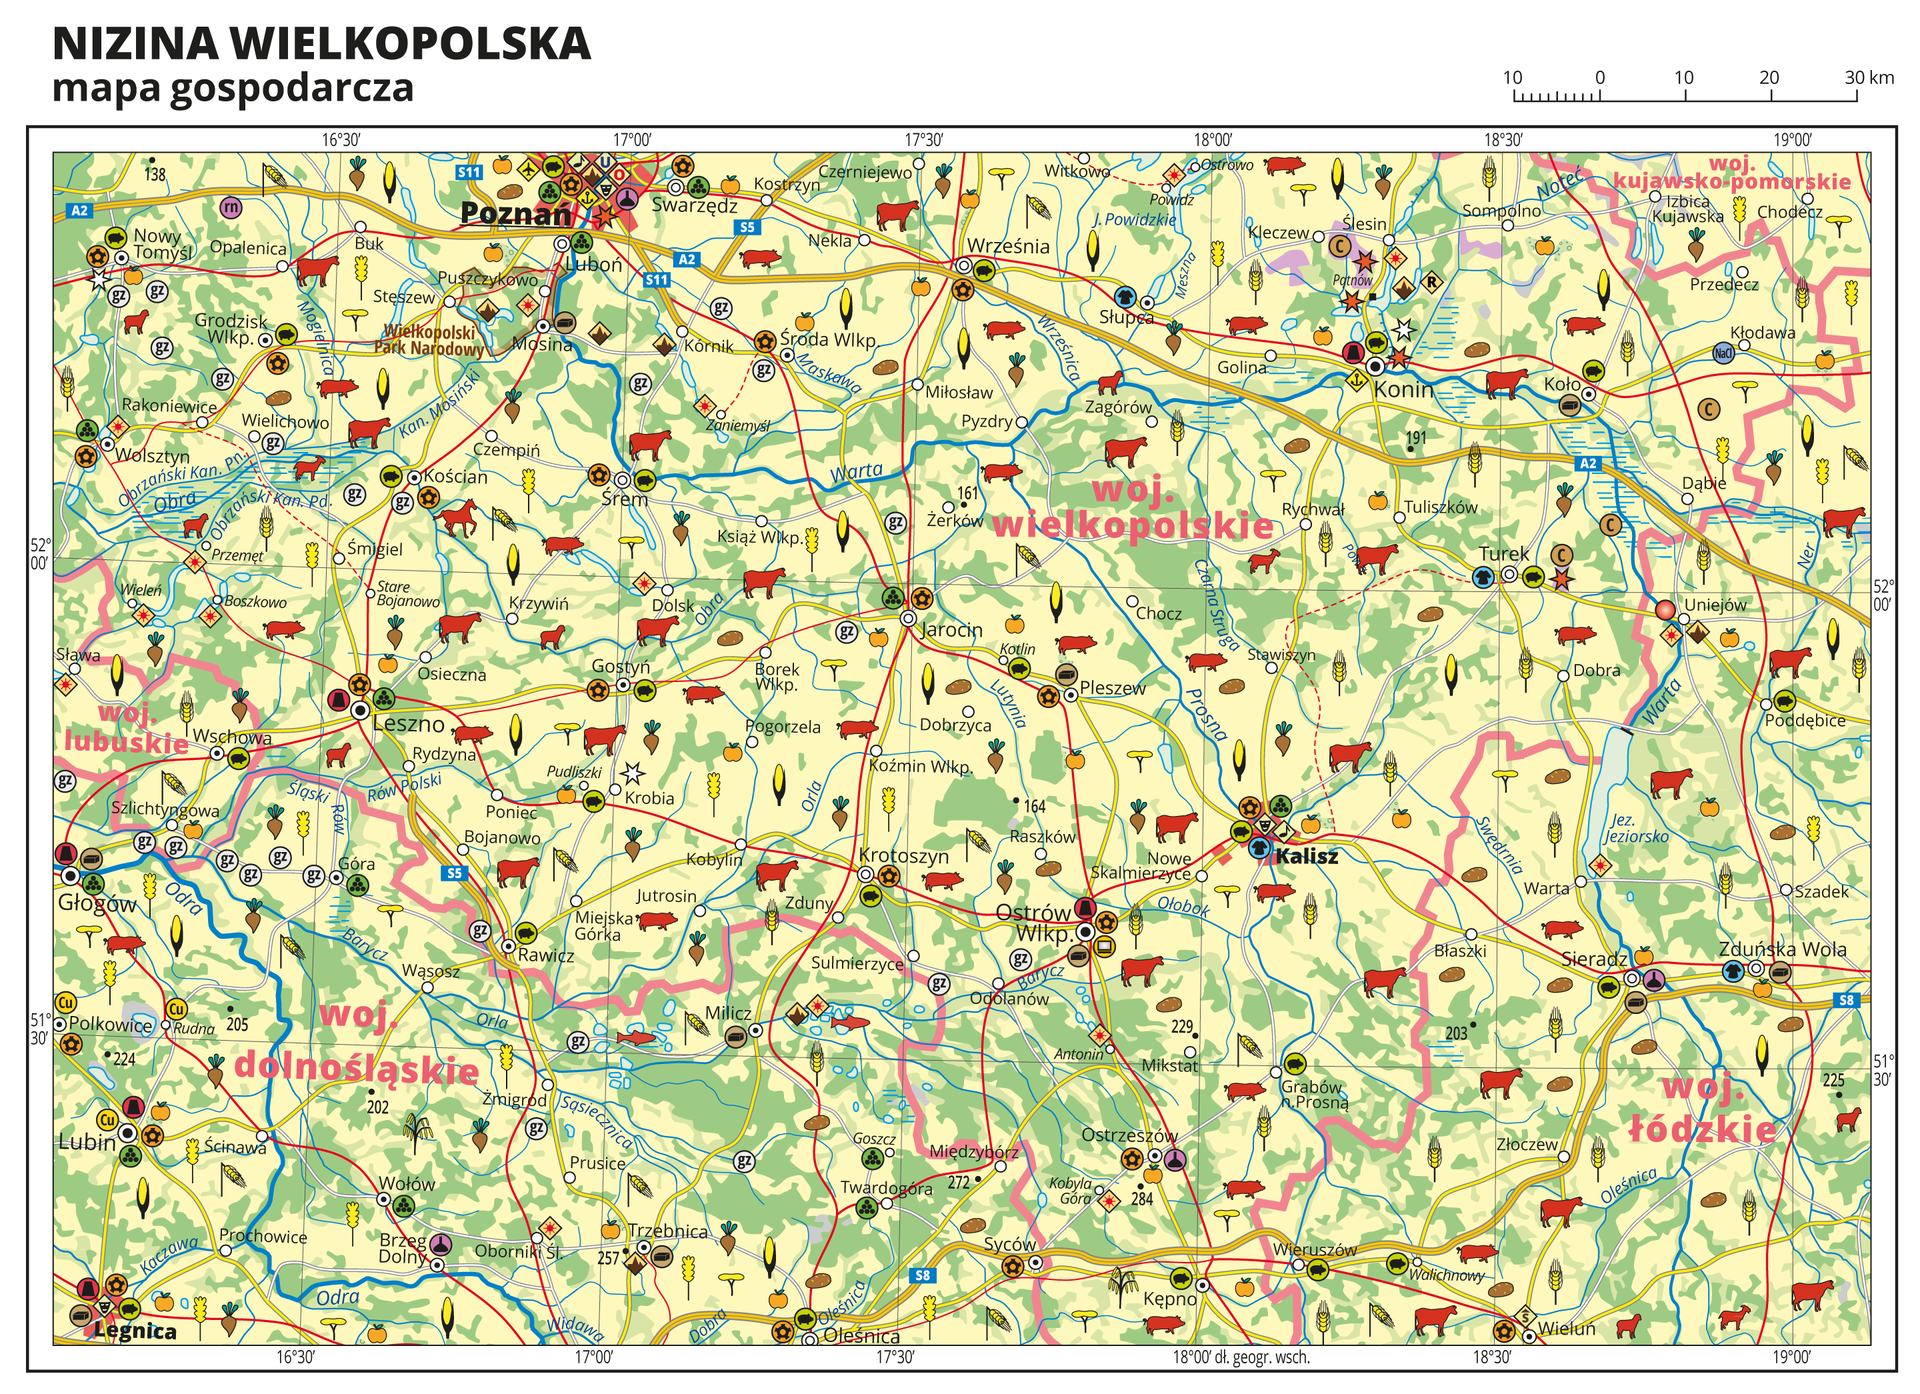 Ilustracja przedstawia mapę gospodarczą Niziny Wielkopolskiej. Tło mapy w kolorze żółtym (grunty orne), jasnozielonym (łąki i pastwiska) i zielonym (lasy). Na mapie sygnatury obrazujące uprawy poszczególnych roślin, hodowlę zwierząt, przemysł, górnictwo i energetykę, komunikację, turystykę, naukę, kulturę i sztukę. Mapa obejmuje tereny Polski od granicy z Niemcami na zachodzie po Toruń i Włocławek na wschodzie, na północy sięgając Bydgoszczy, a na południu Leszna. Największe zagęszczenie sygnatur w Poznaniu, Kaliszu i Legnicy. Duże zagęszczenie sygnatur w Koninie, Ostrowie Wielkopolskim, Sieradzu, Lesznie i Lubinie. Na mapie przedstawiono sieć dróg i kolei, porty wodne i lotnicze, granice województw, granicę państwa. Opisano województwa wielkopolskie, kujawsko-pomorskie, łódzkie, dolnośląskie i lubuskie. Opisano Niemcy. Mapa zawiera południki i równoleżniki, dookoła mapy w białej ramce opisano współrzędne geograficzne co trzydzieści minut.